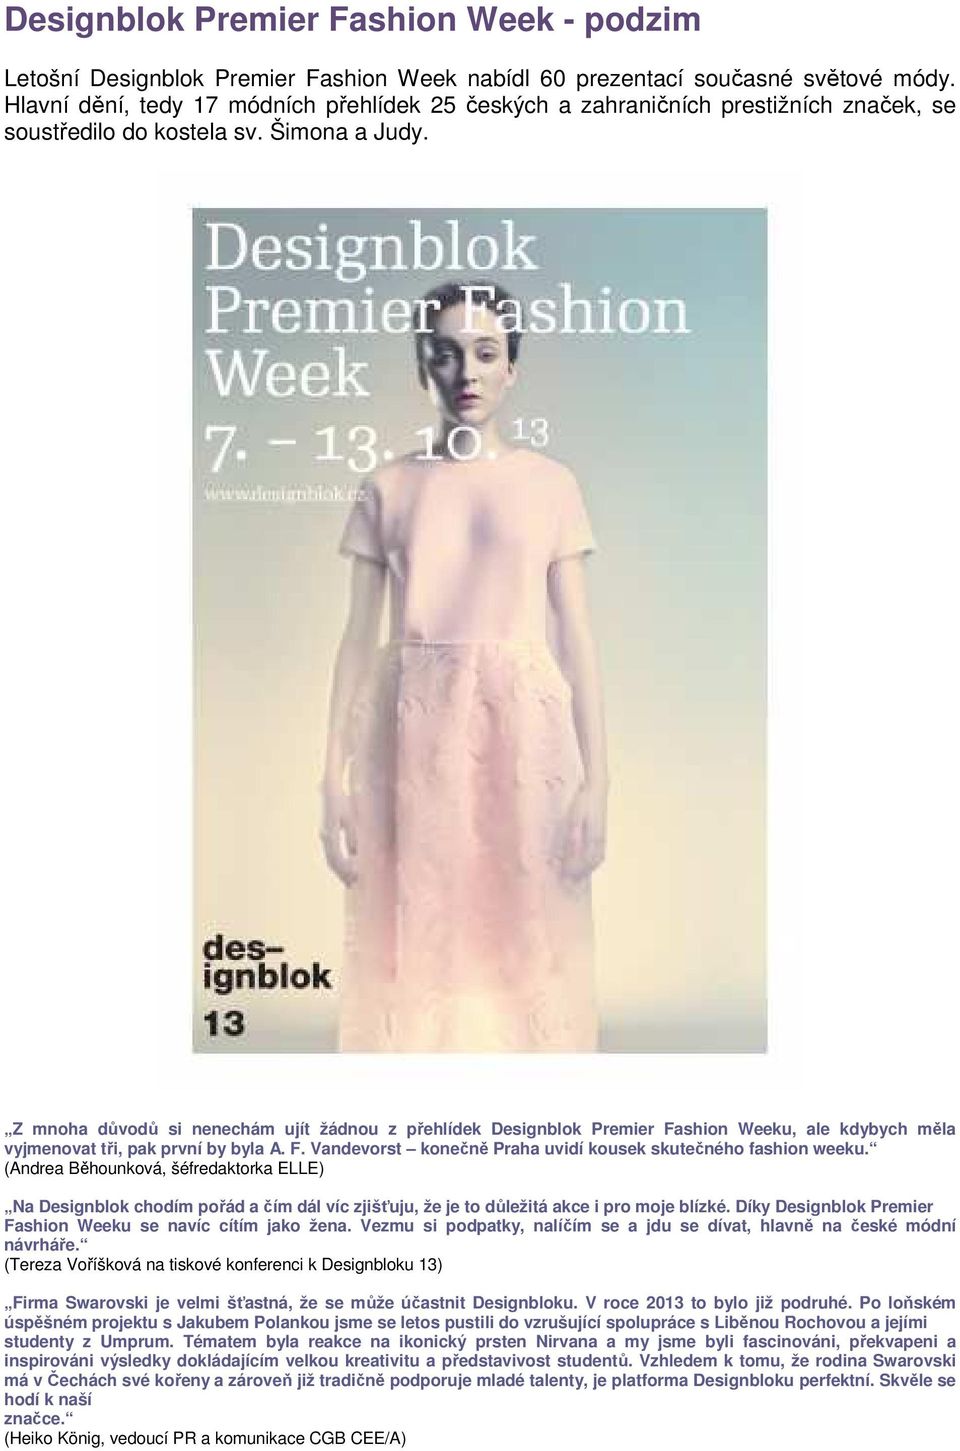 Z mnoha důvodů si nenechám ujít žádnou z přehlídek Designblok Premier Fashion Weeku, ale kdybych měla vyjmenovat tři, pak první by byla A. F. Vandevorst konečně Praha uvidí kousek skutečného fashion weeku.